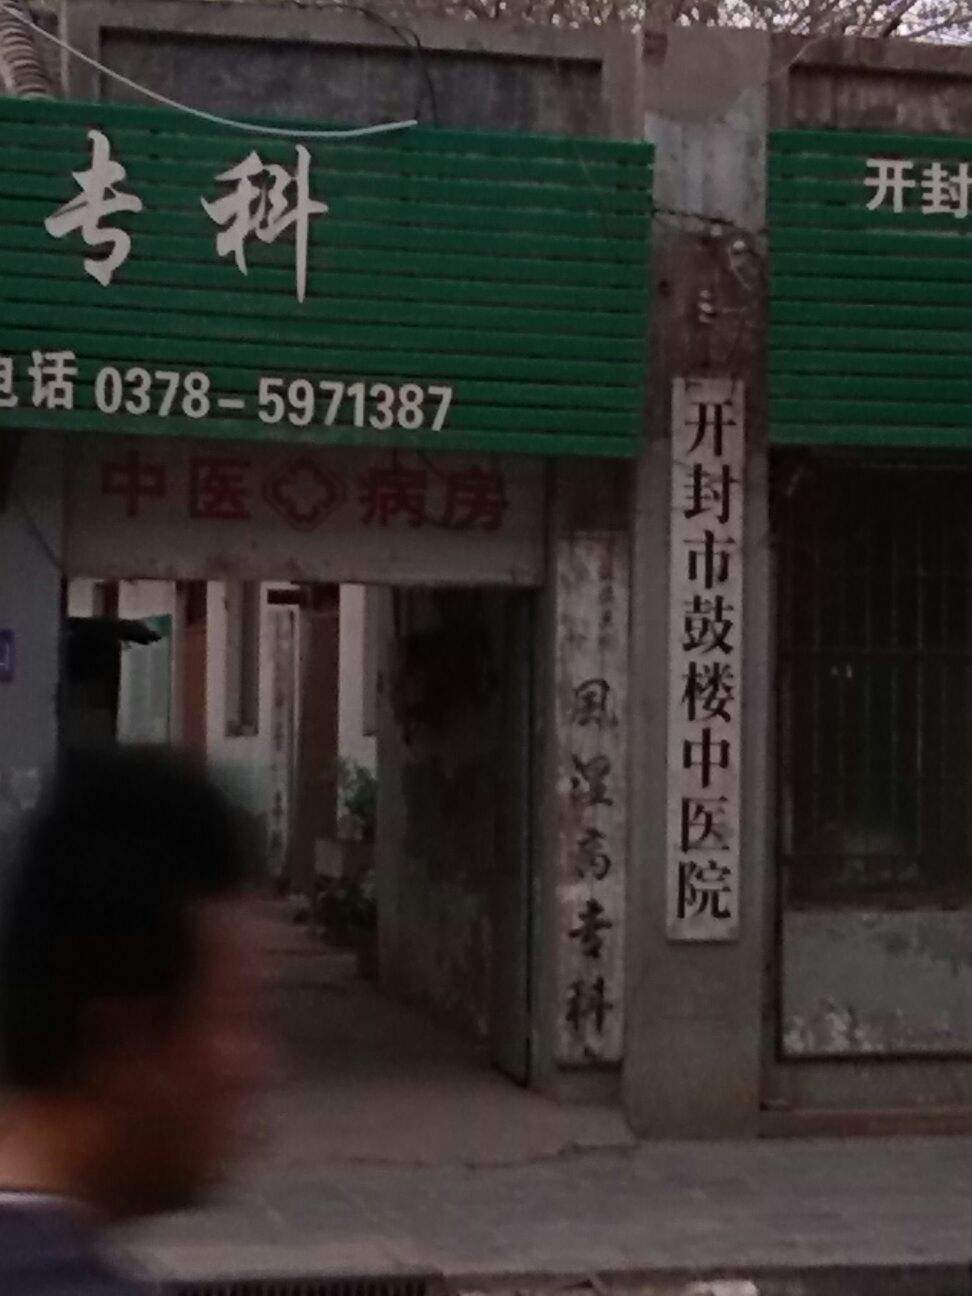 包含北京鼓楼中医院挂号号贩子联系方式第一时间安排联系方式信誉保证